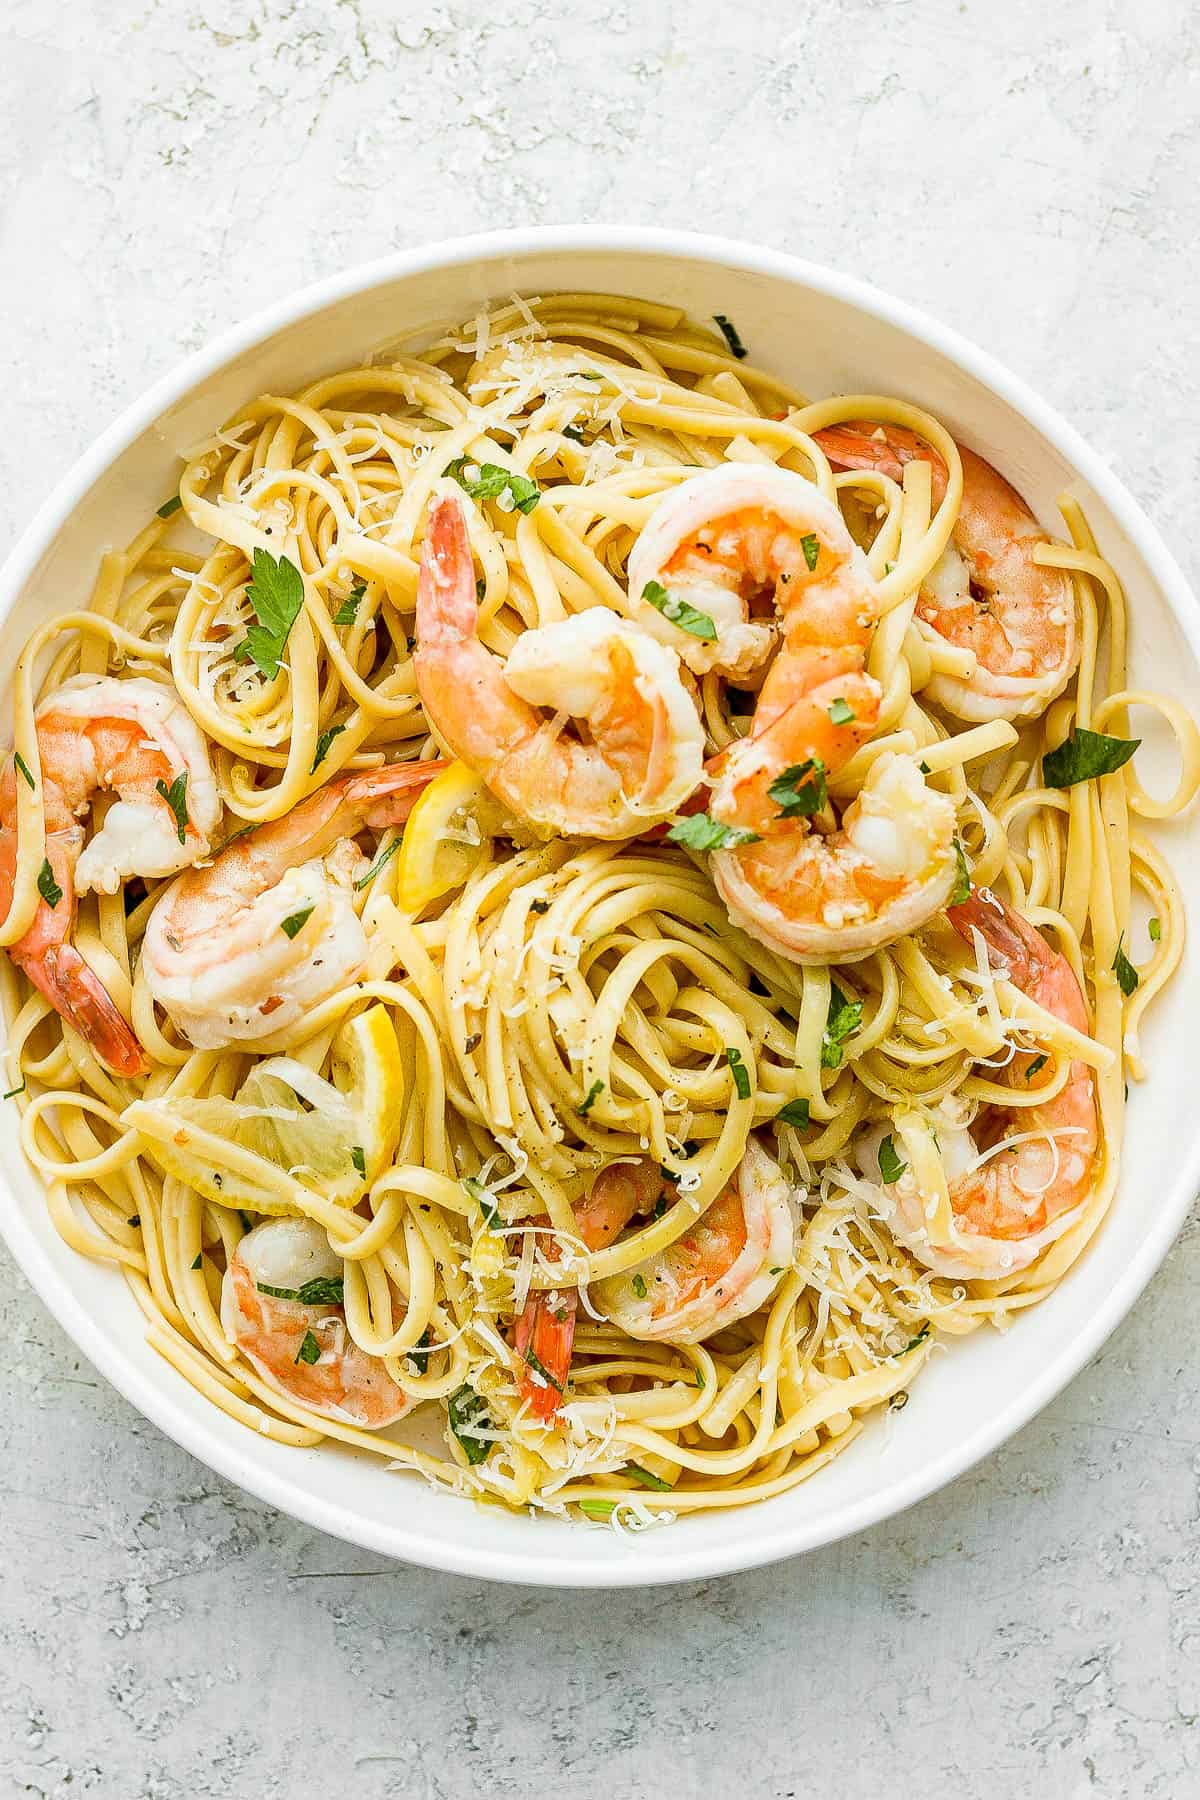 A recipe for shrimp scampi with pasta.